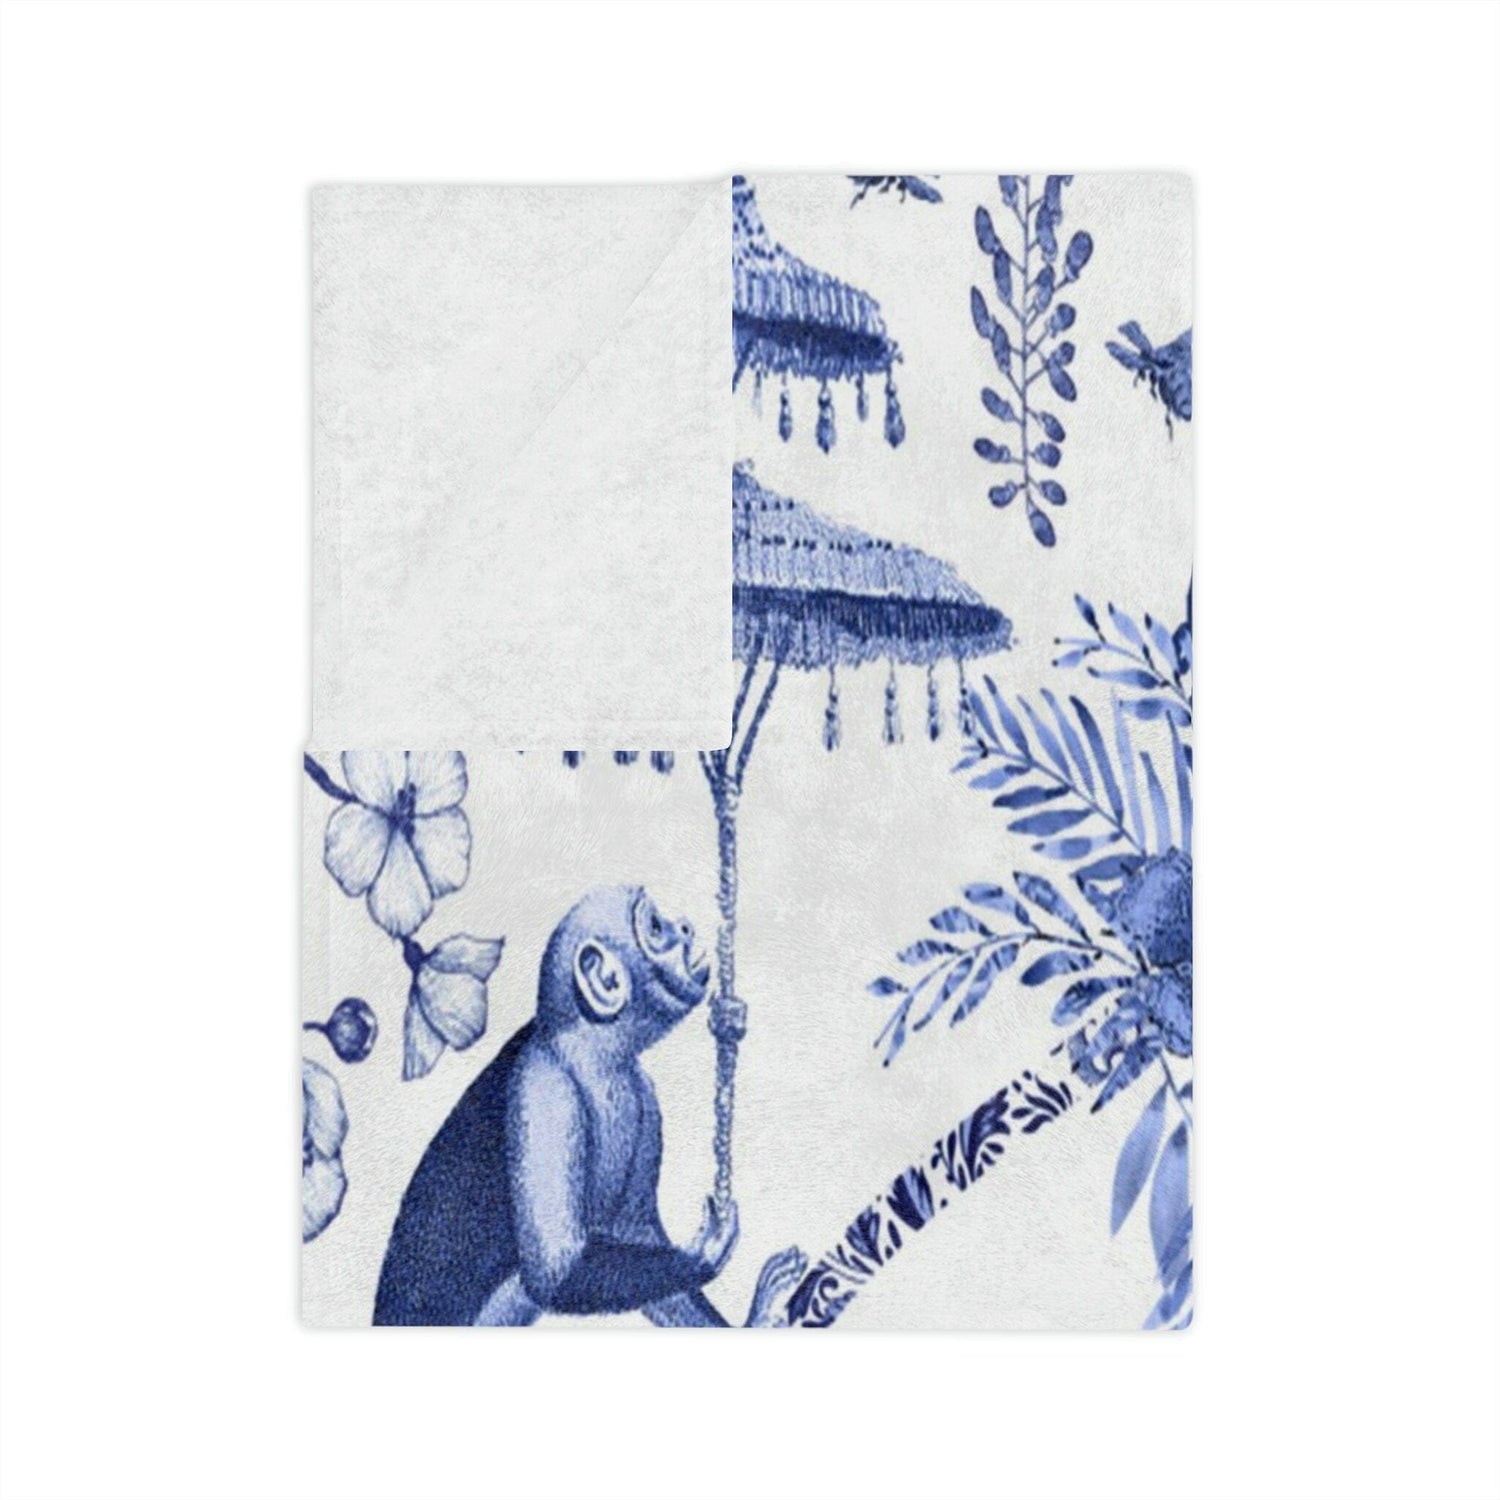 Kate McEnroe New York Chinoiserie Grandmilenial Botanical Toile Throw Blanket, Floral Blue and White Chinoiserie Jungle Velveteen Minky Blanket, Maximalist Decor Blankets